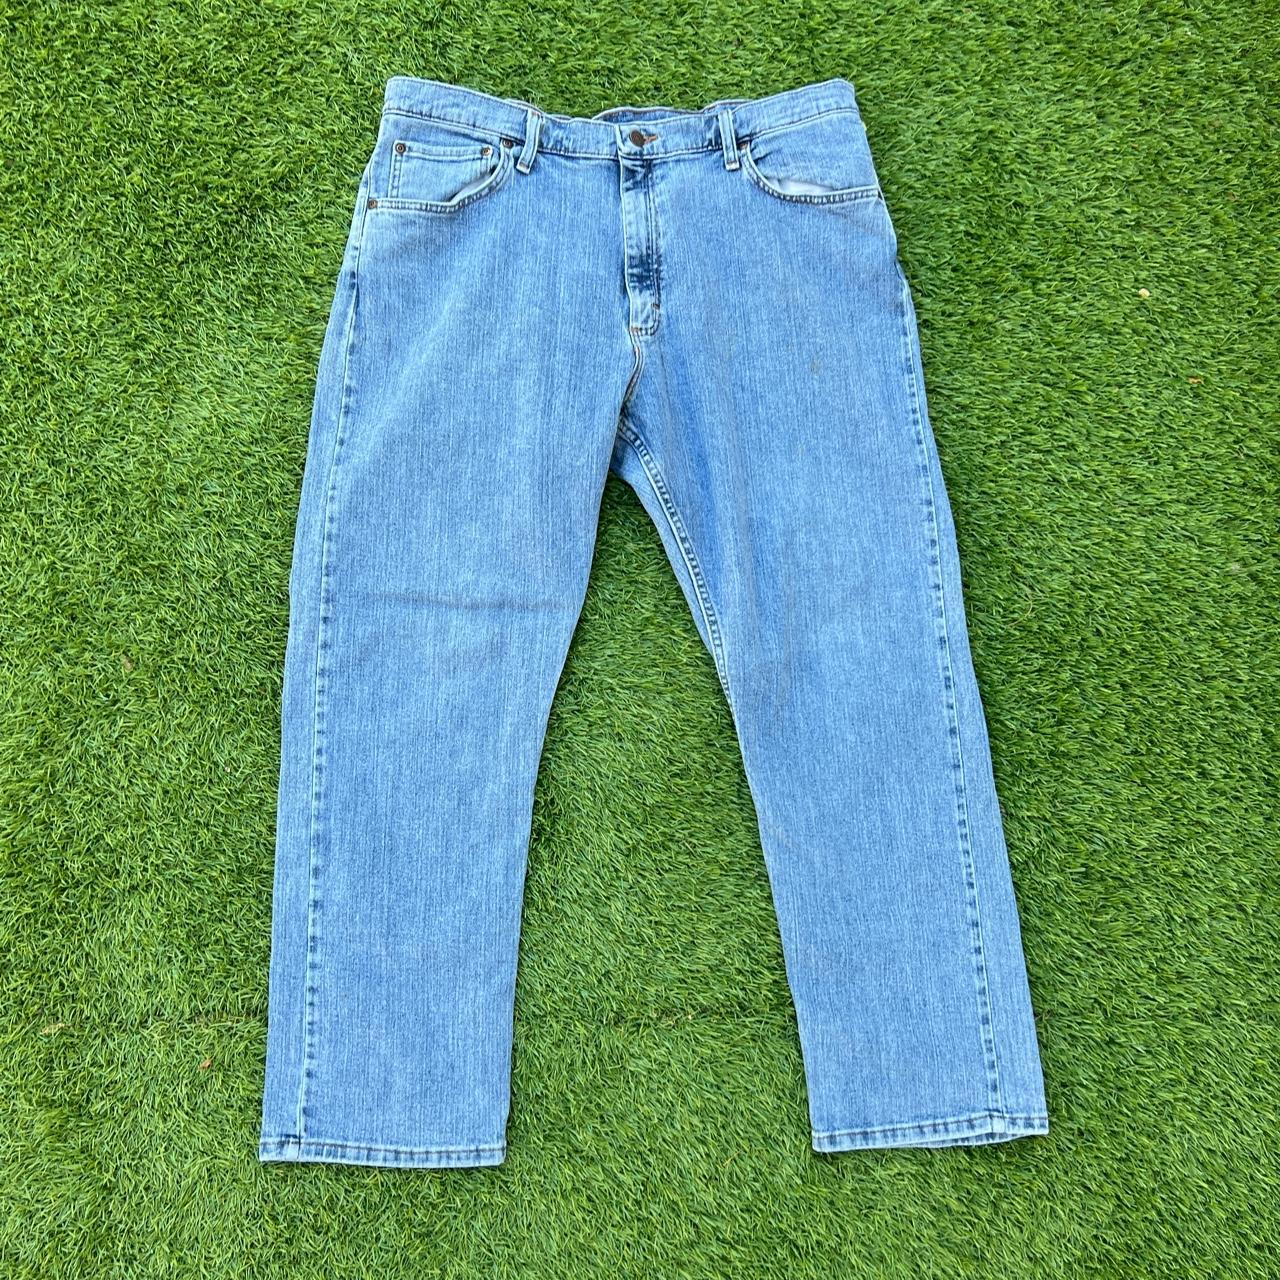 Vintage Wrangler Jeans - 38x29 - Good Quality -... - Depop